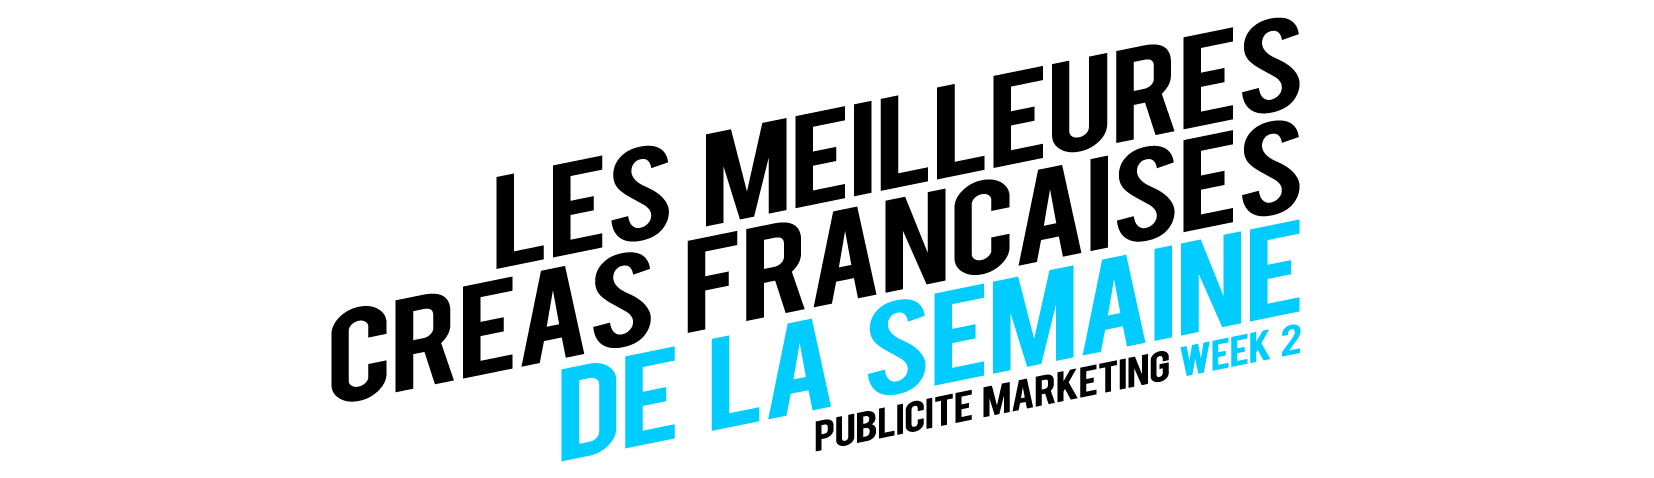 llllitl-publicité-marketing-meilleures-créations-francaises-france-agences